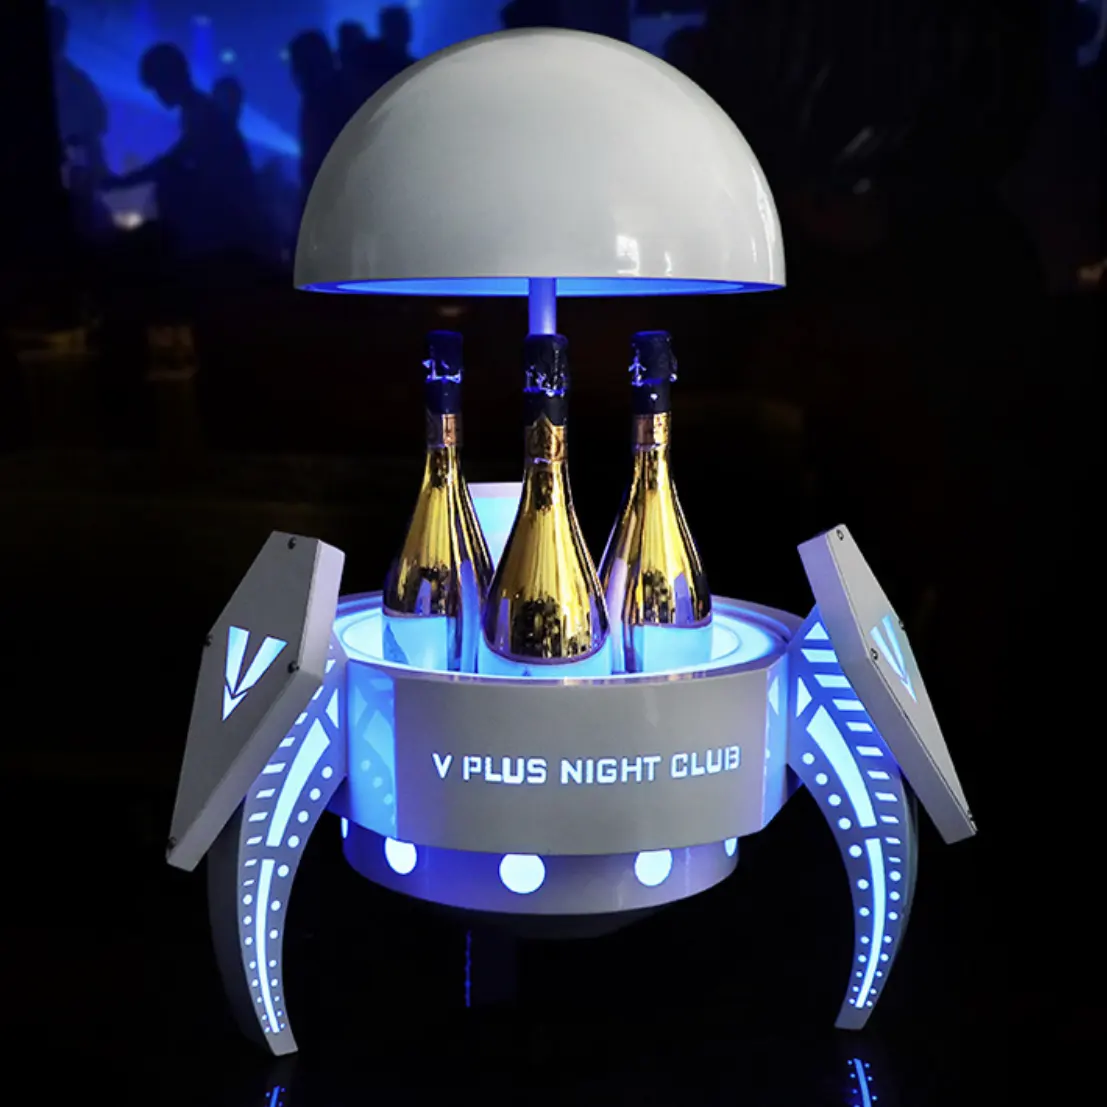 رفوف عرض جديدة أوتوماتيكية على شكل كرة لعرض زجاجات الويسكي والكوكتيل بأضواء LED تصلح للاستمتاع في الأندية الليلية صالات الجلوس دلاء الثلج على شكل LED